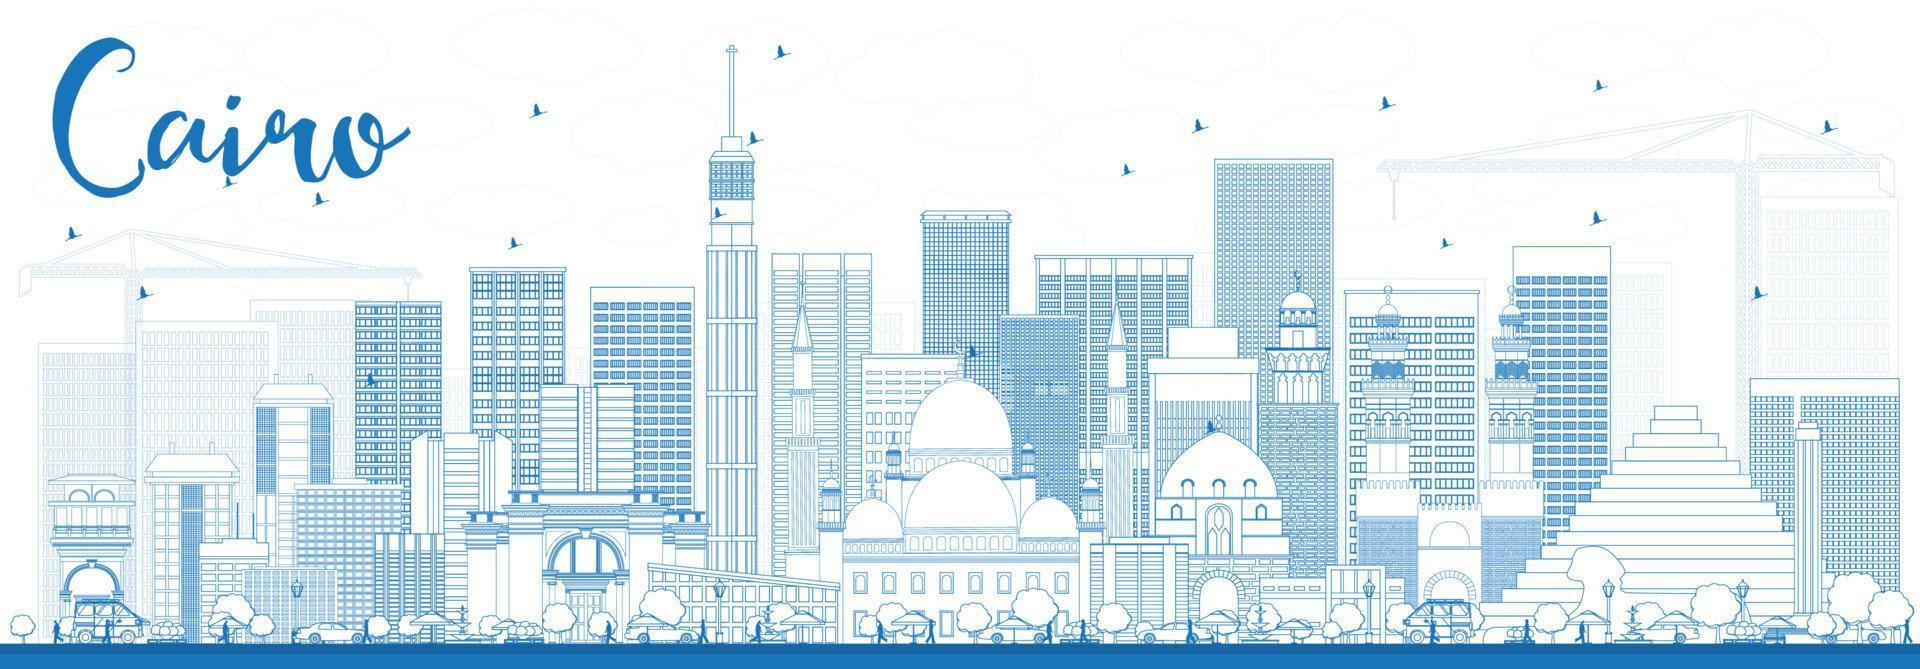 schets de skyline van cairo met blauwe gebouwen. vector